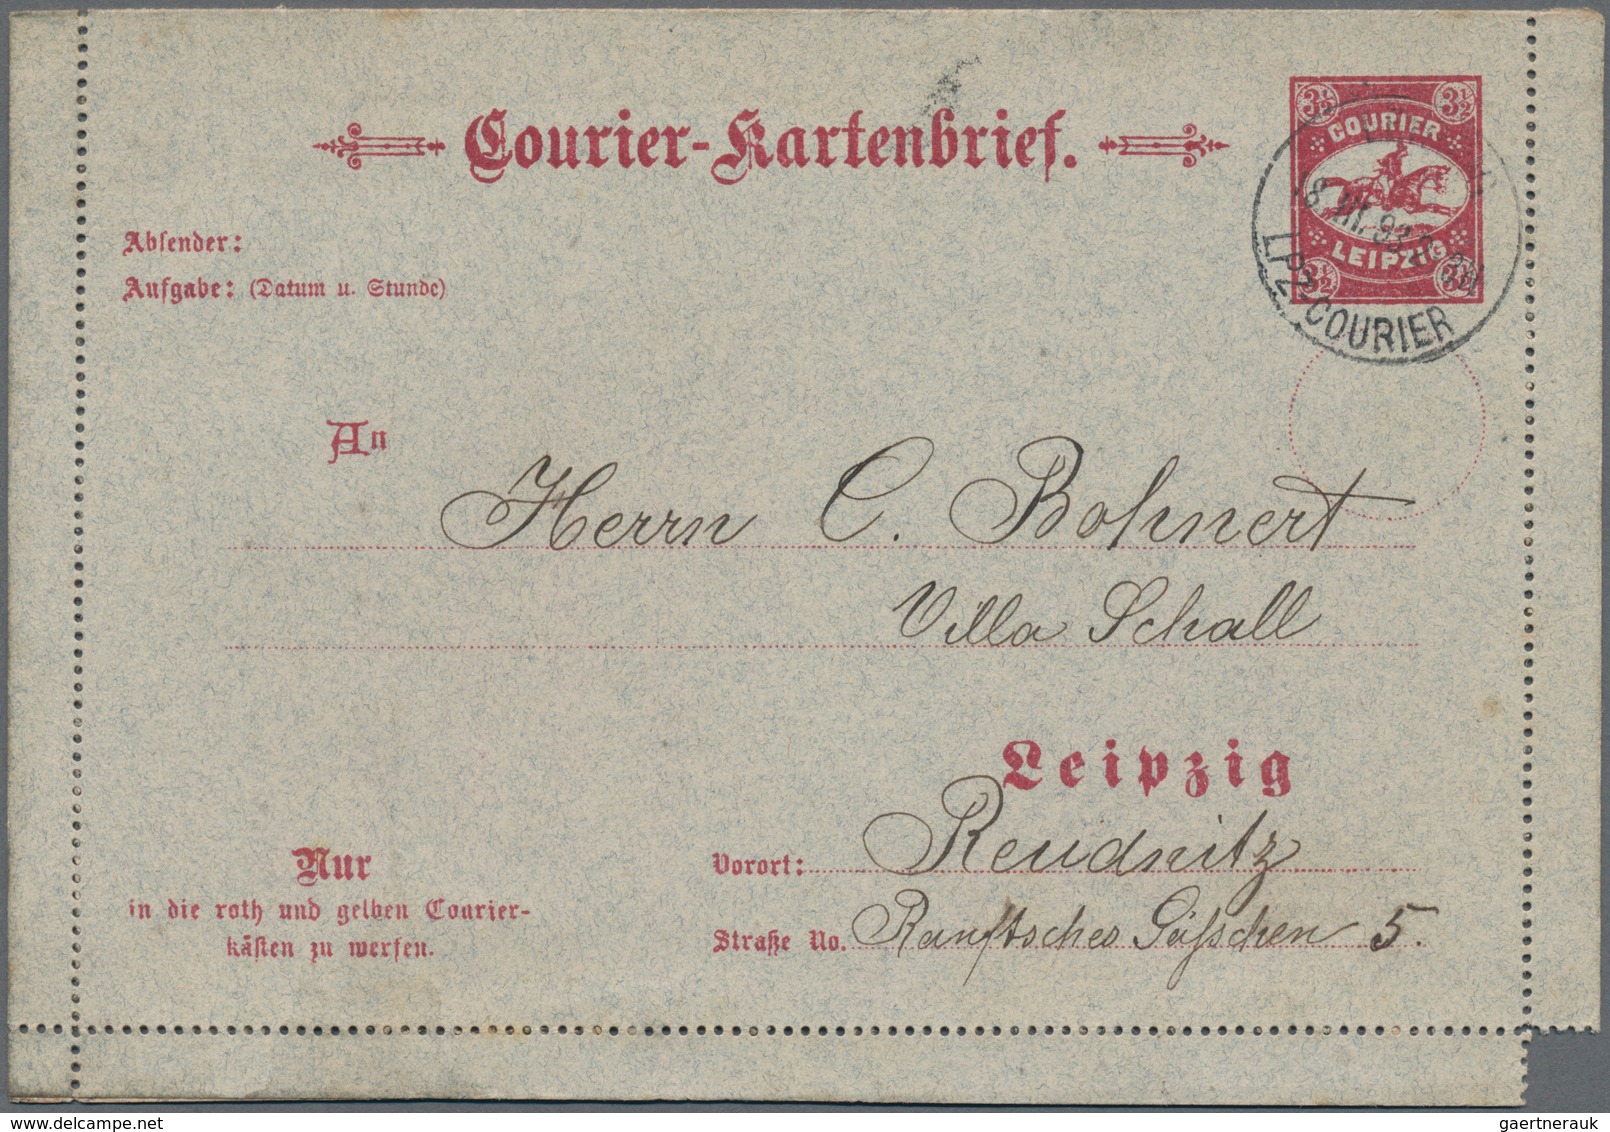 Deutsches Reich - Privatpost (Stadtpost): LEIPZIG: Courier Kartenbrief Mit "An", Rs. Kein Aufdruck, - Private & Lokale Post